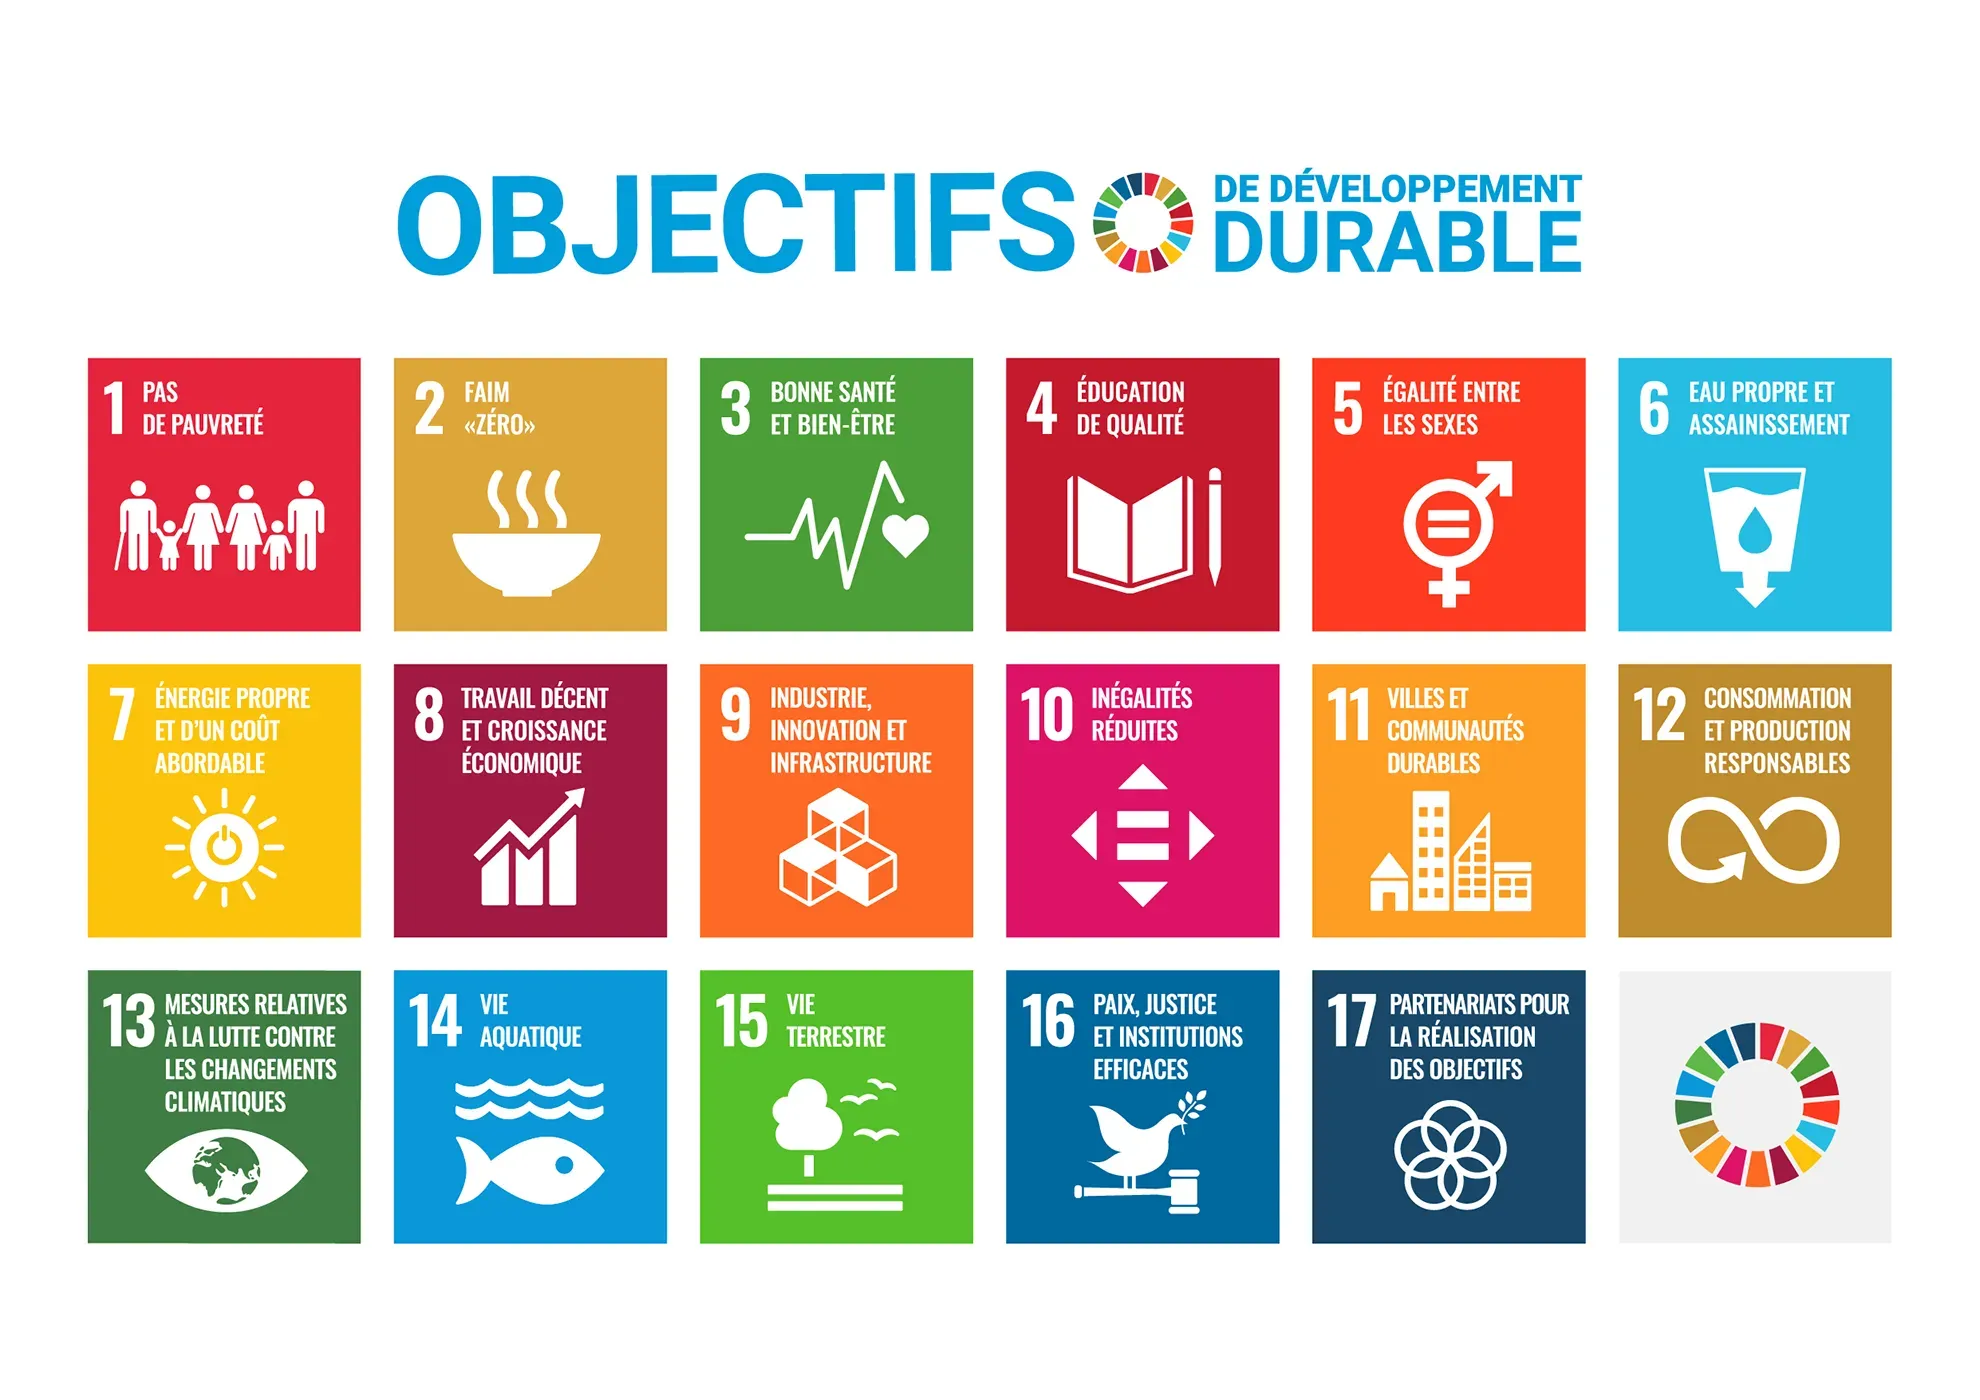 ODD Objectifs de développement durable